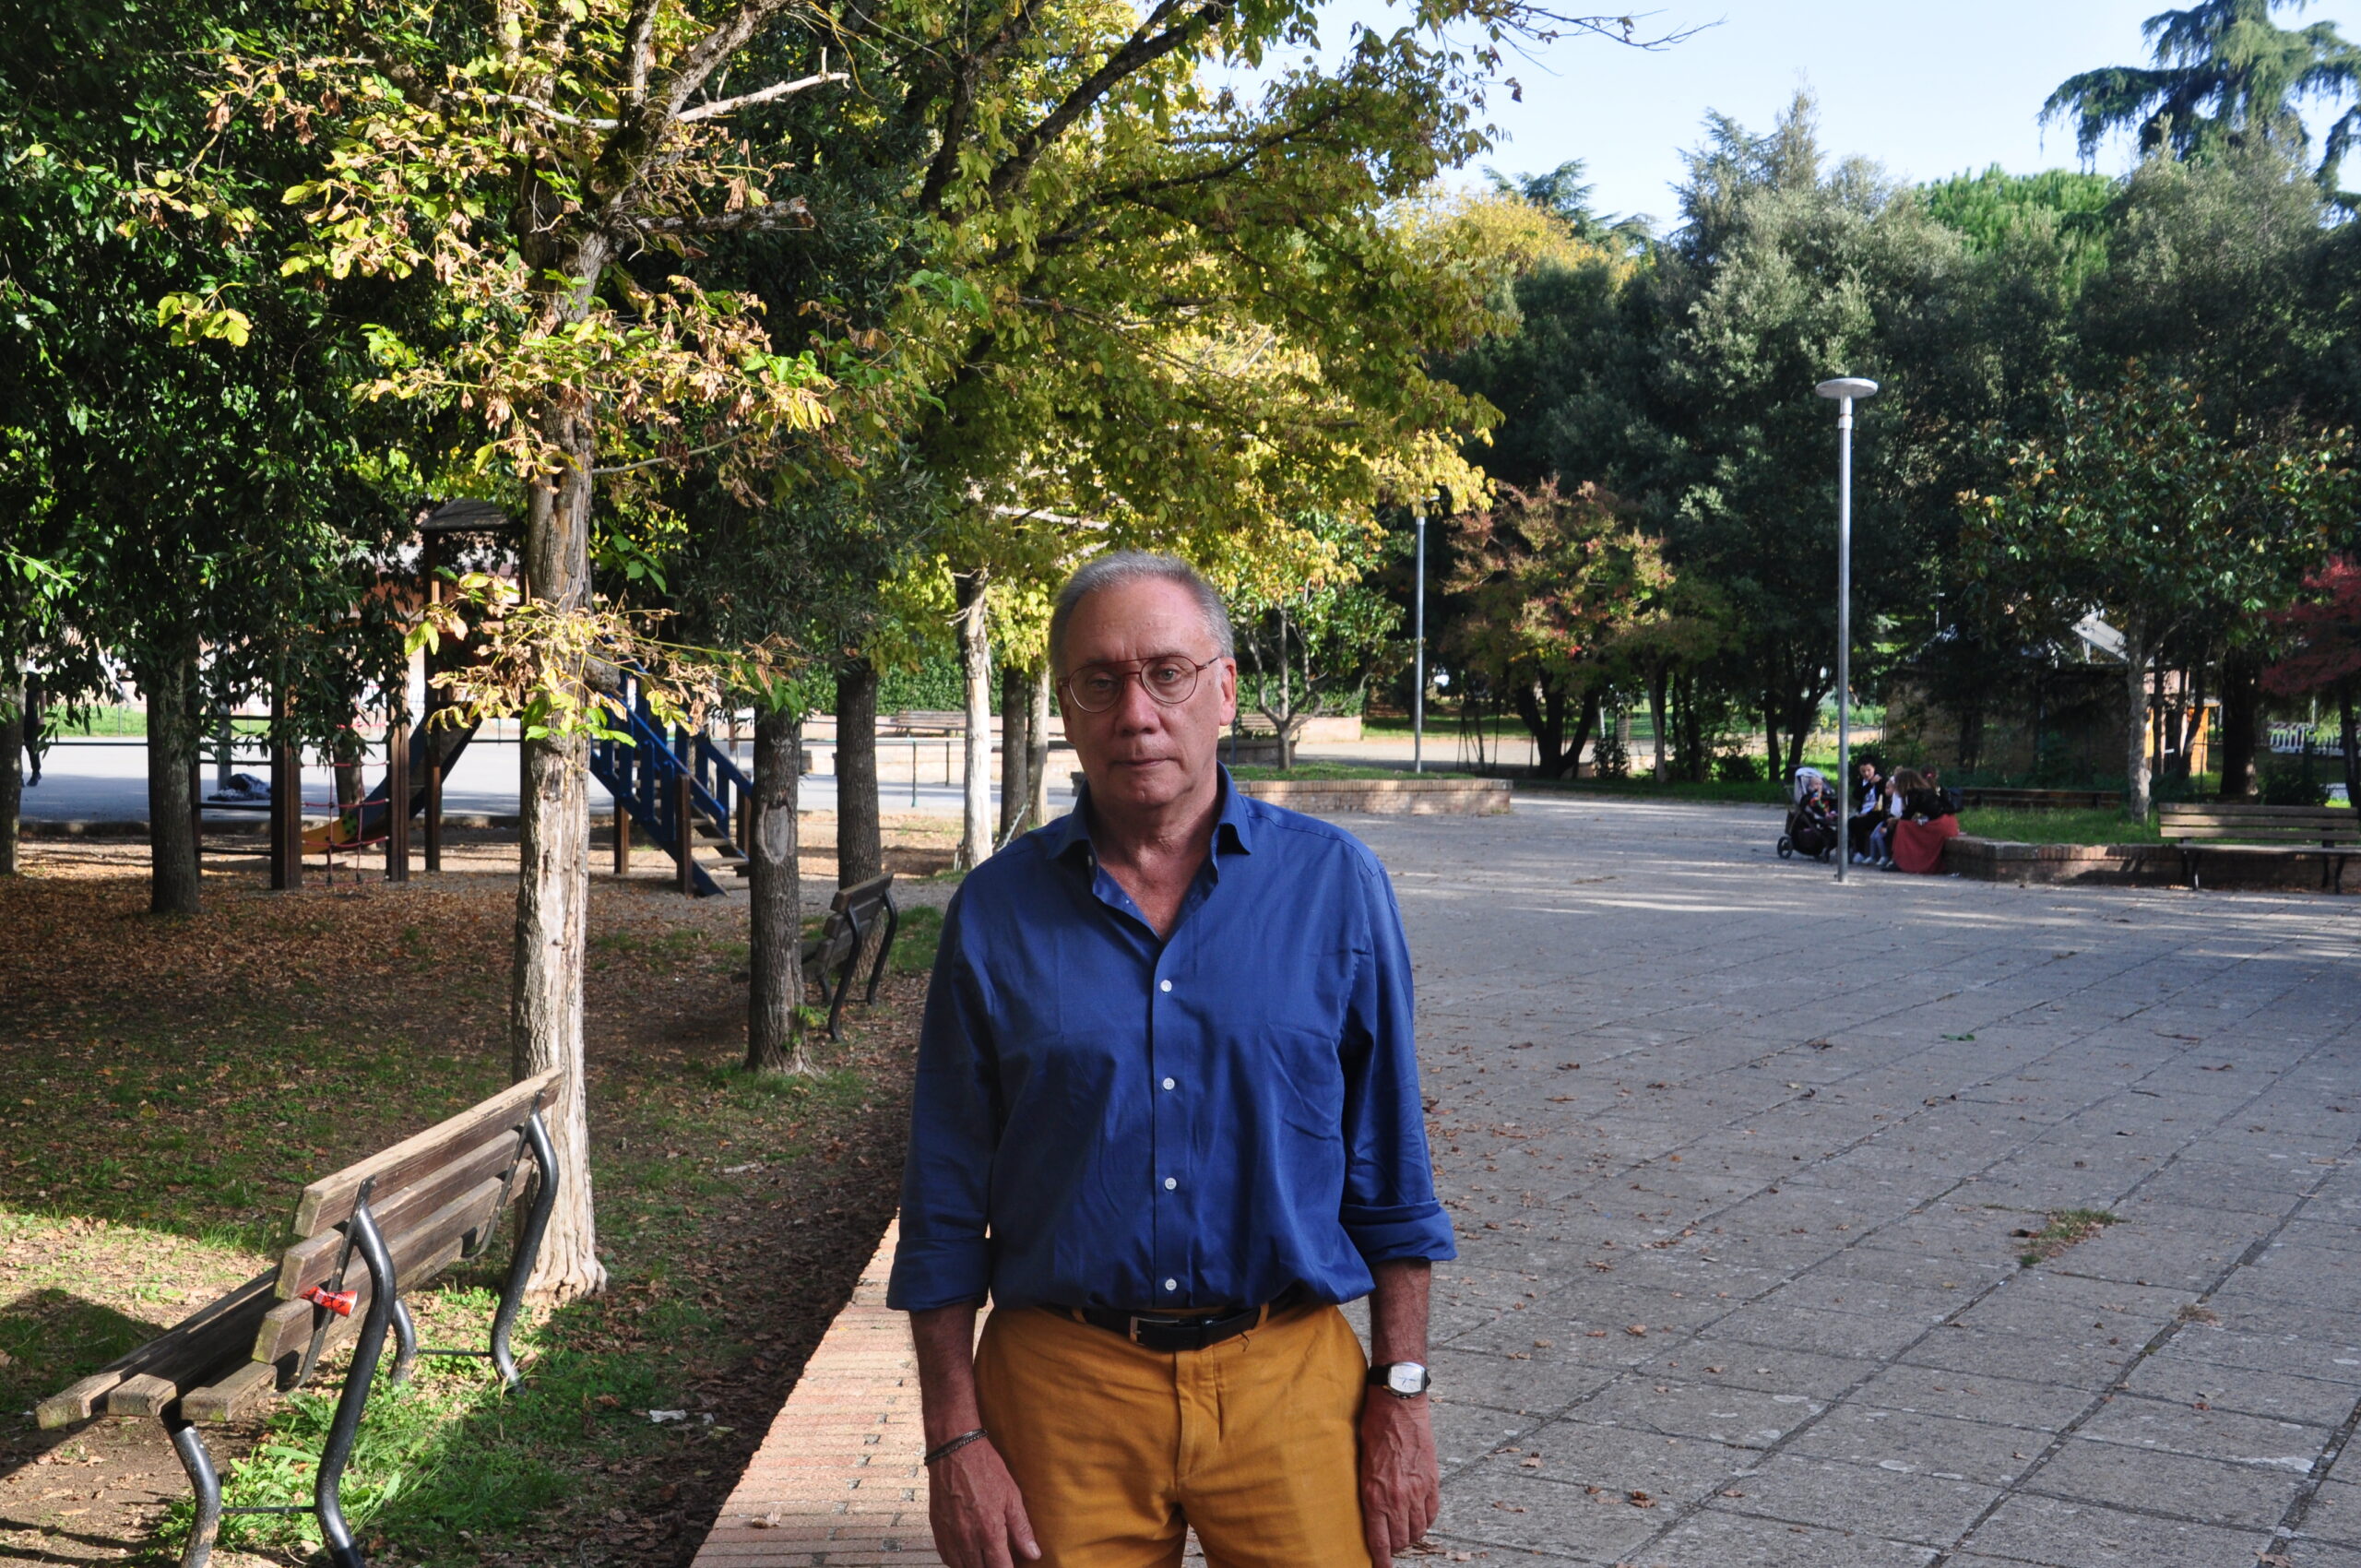 Fabio Pacciani: degrado e sporcizia al Parco Ochino, serve maggiore attenzione e tutela